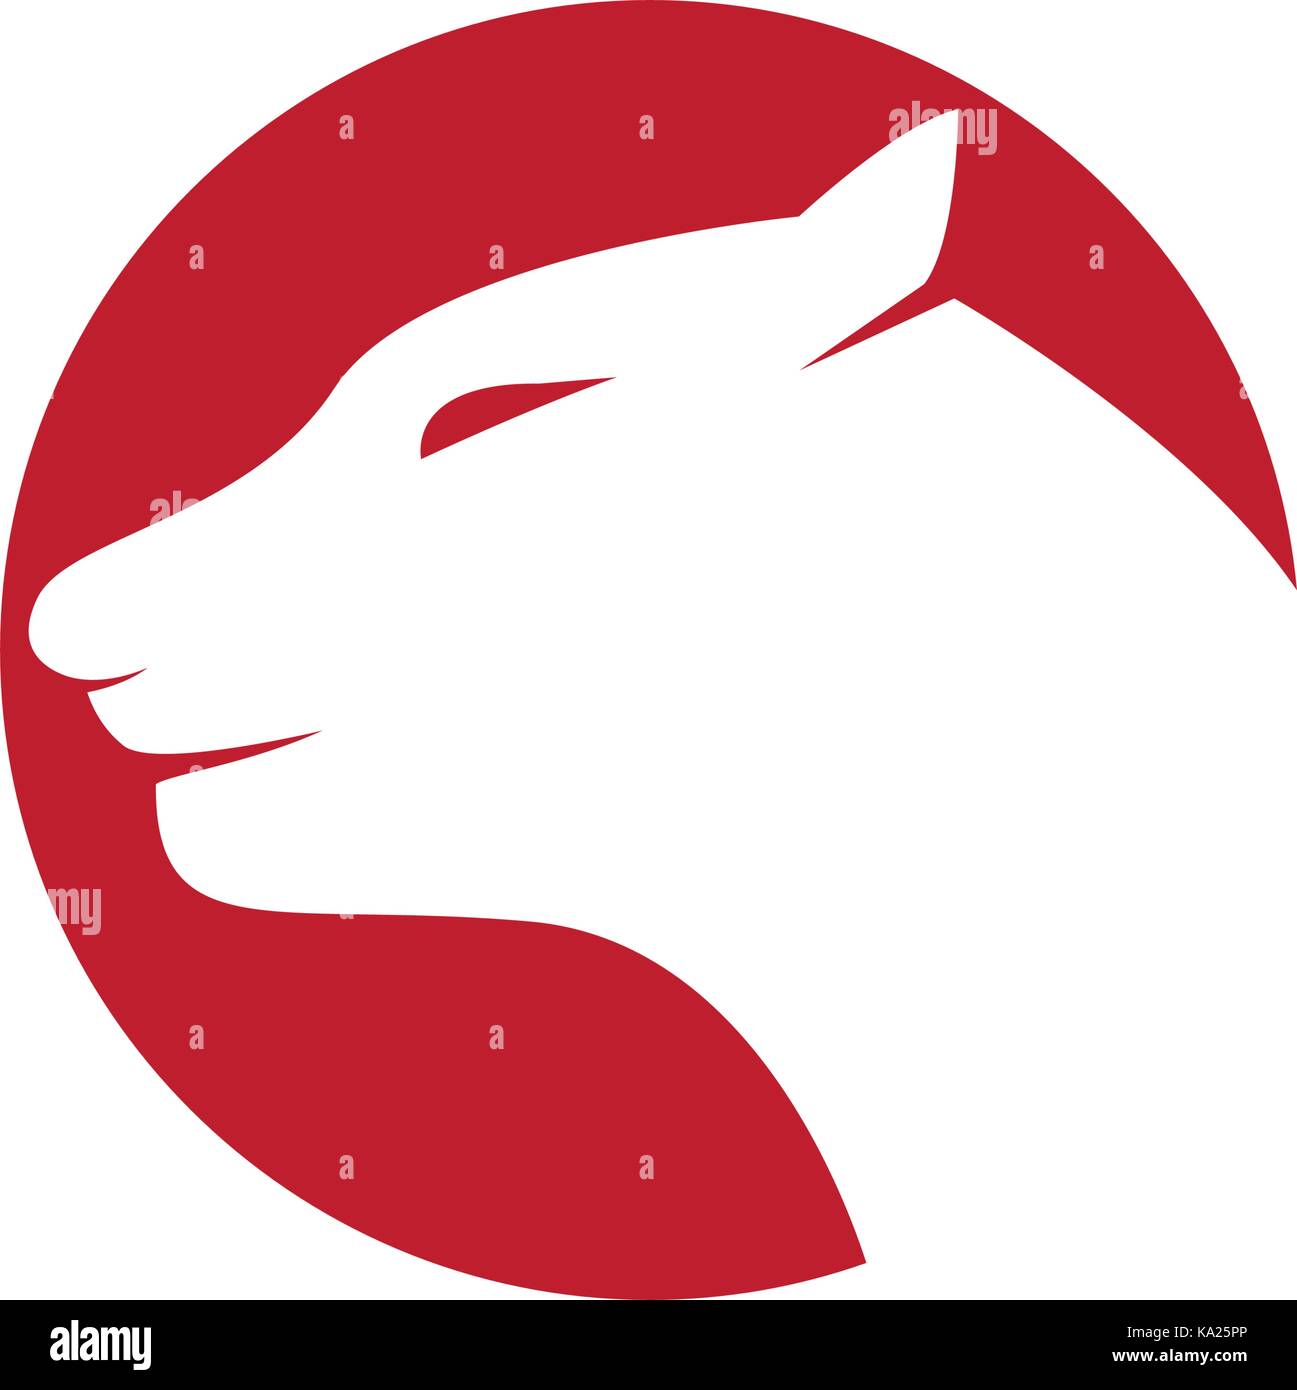 Tiger logo template vector icon design Stock Vector